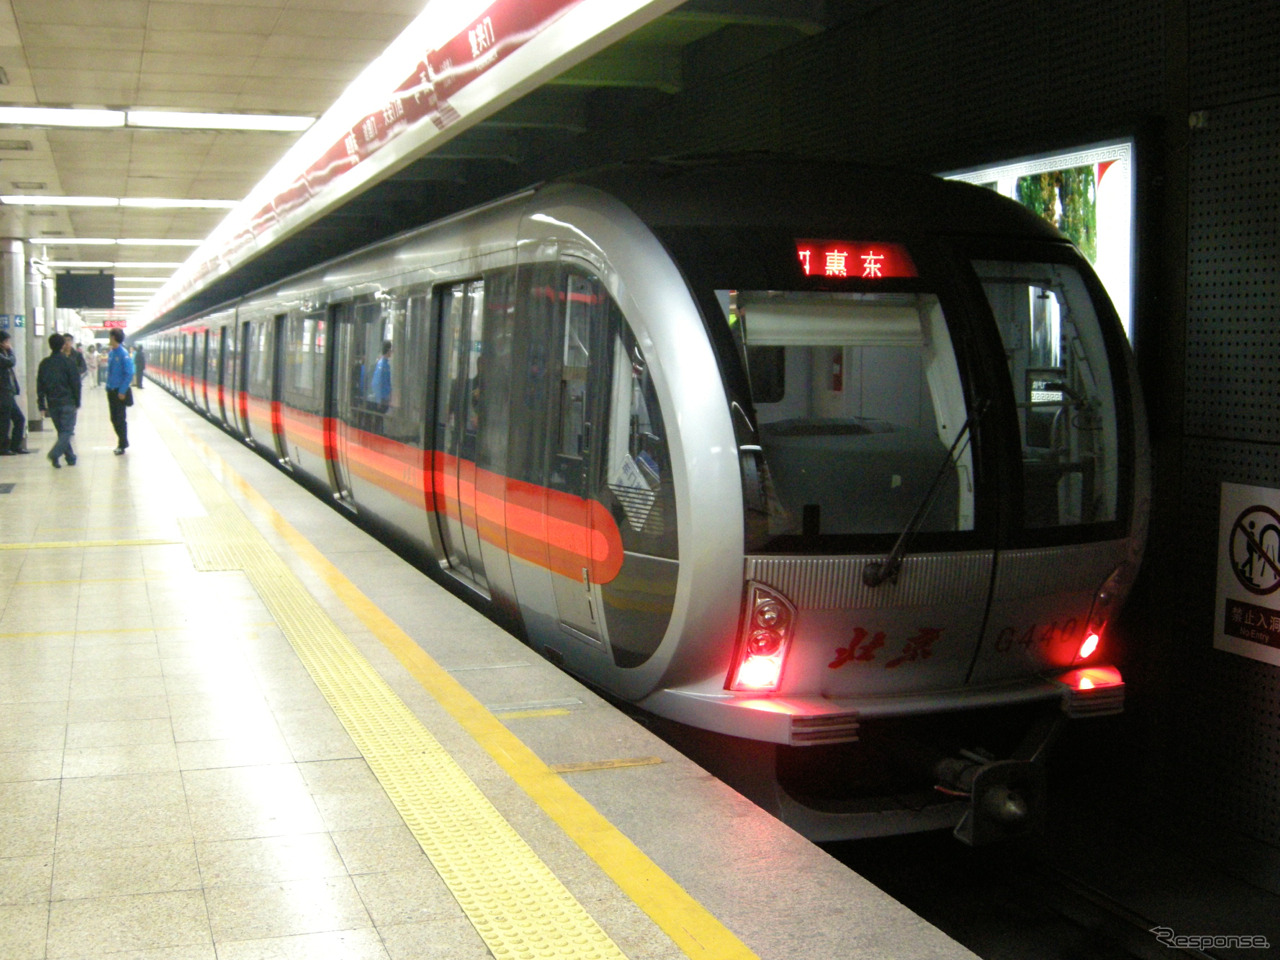 中国の二大鉄道車両メーカー、中国南車と中国北車が合併を発表。写真は南車グループが製造した北京地下鉄1号線の電車